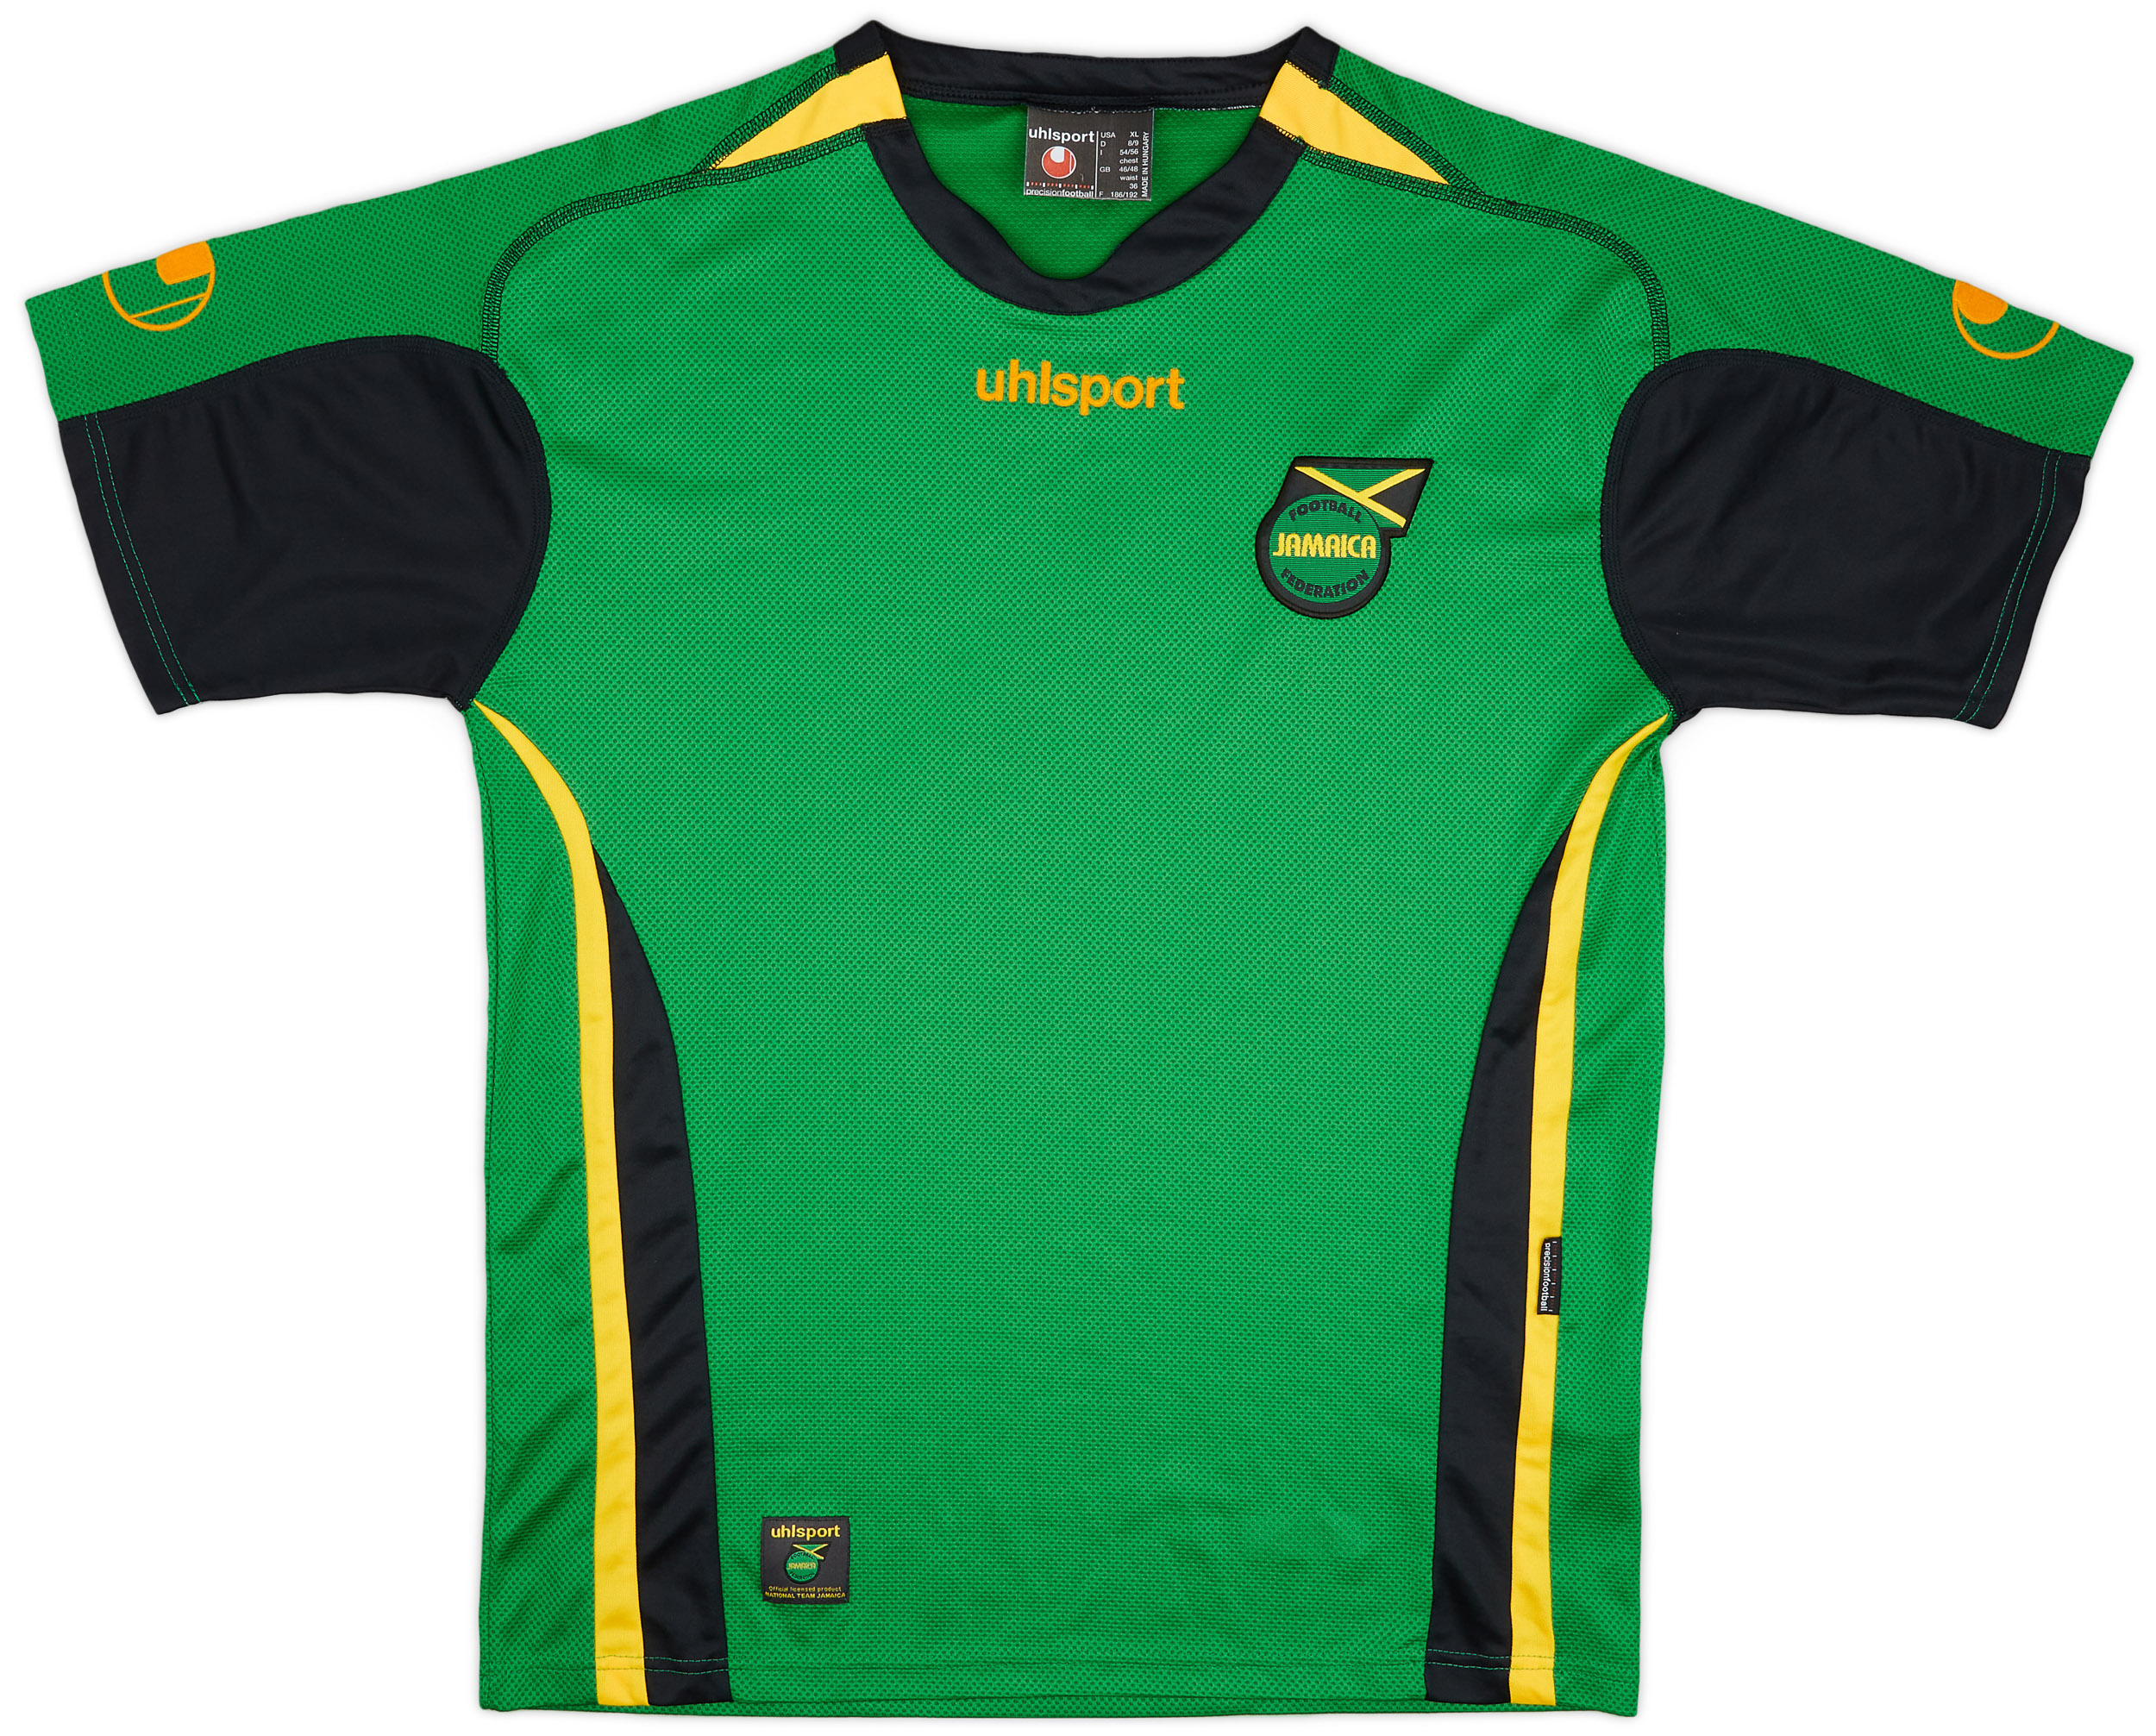 2006-07 Jamaica Away Shirt - 9/10 - ()